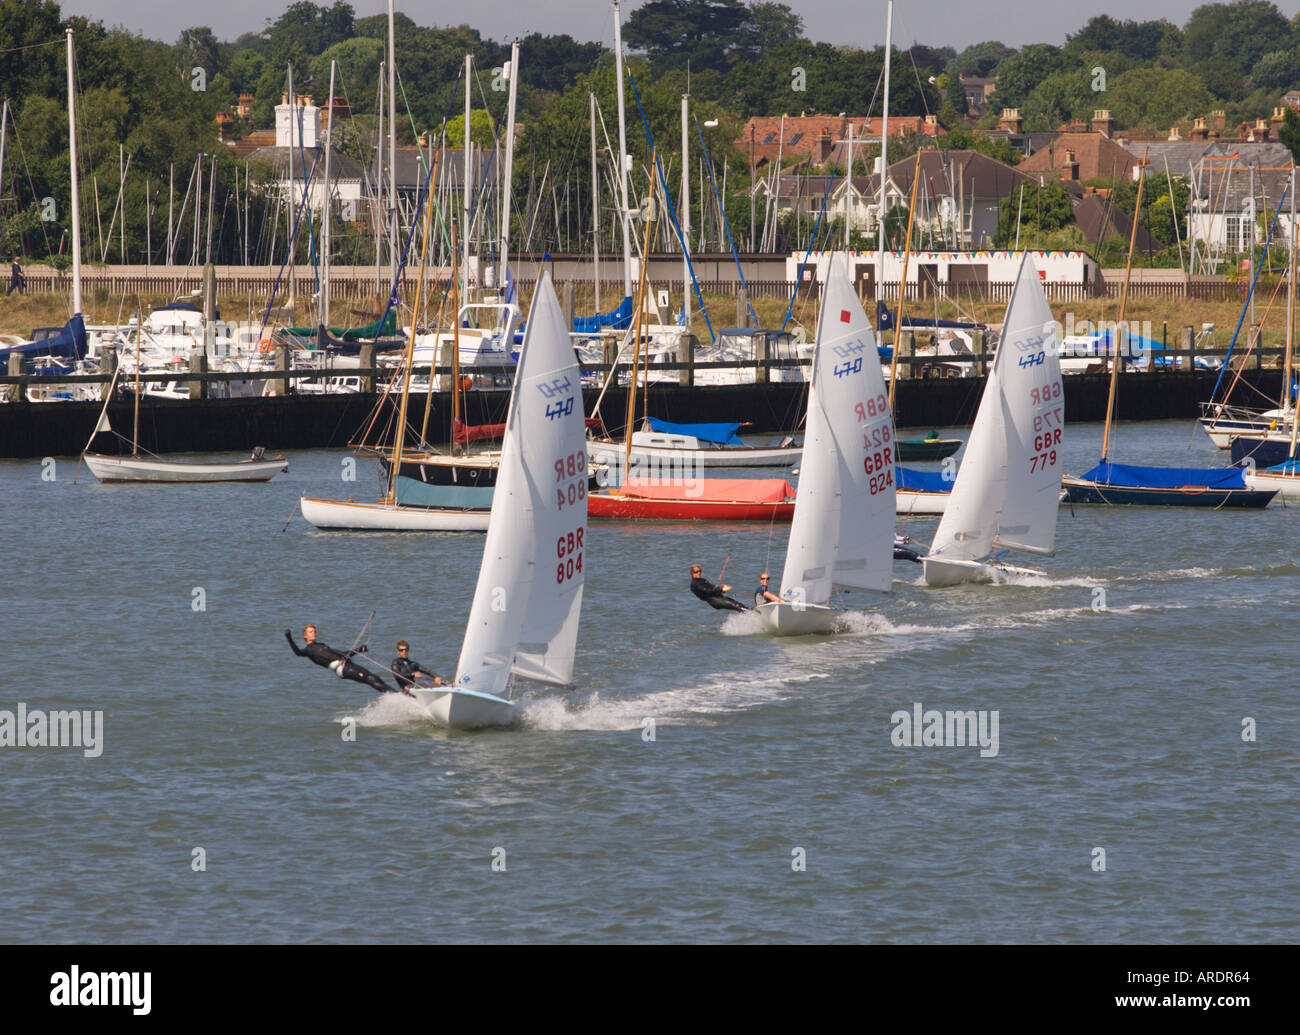 Trio di classe olimpica 470 due uomo racing derive a pieno la vela in linea con centinaia di yacht a montanti al di là di Lymington Inghilterra Foto Stock